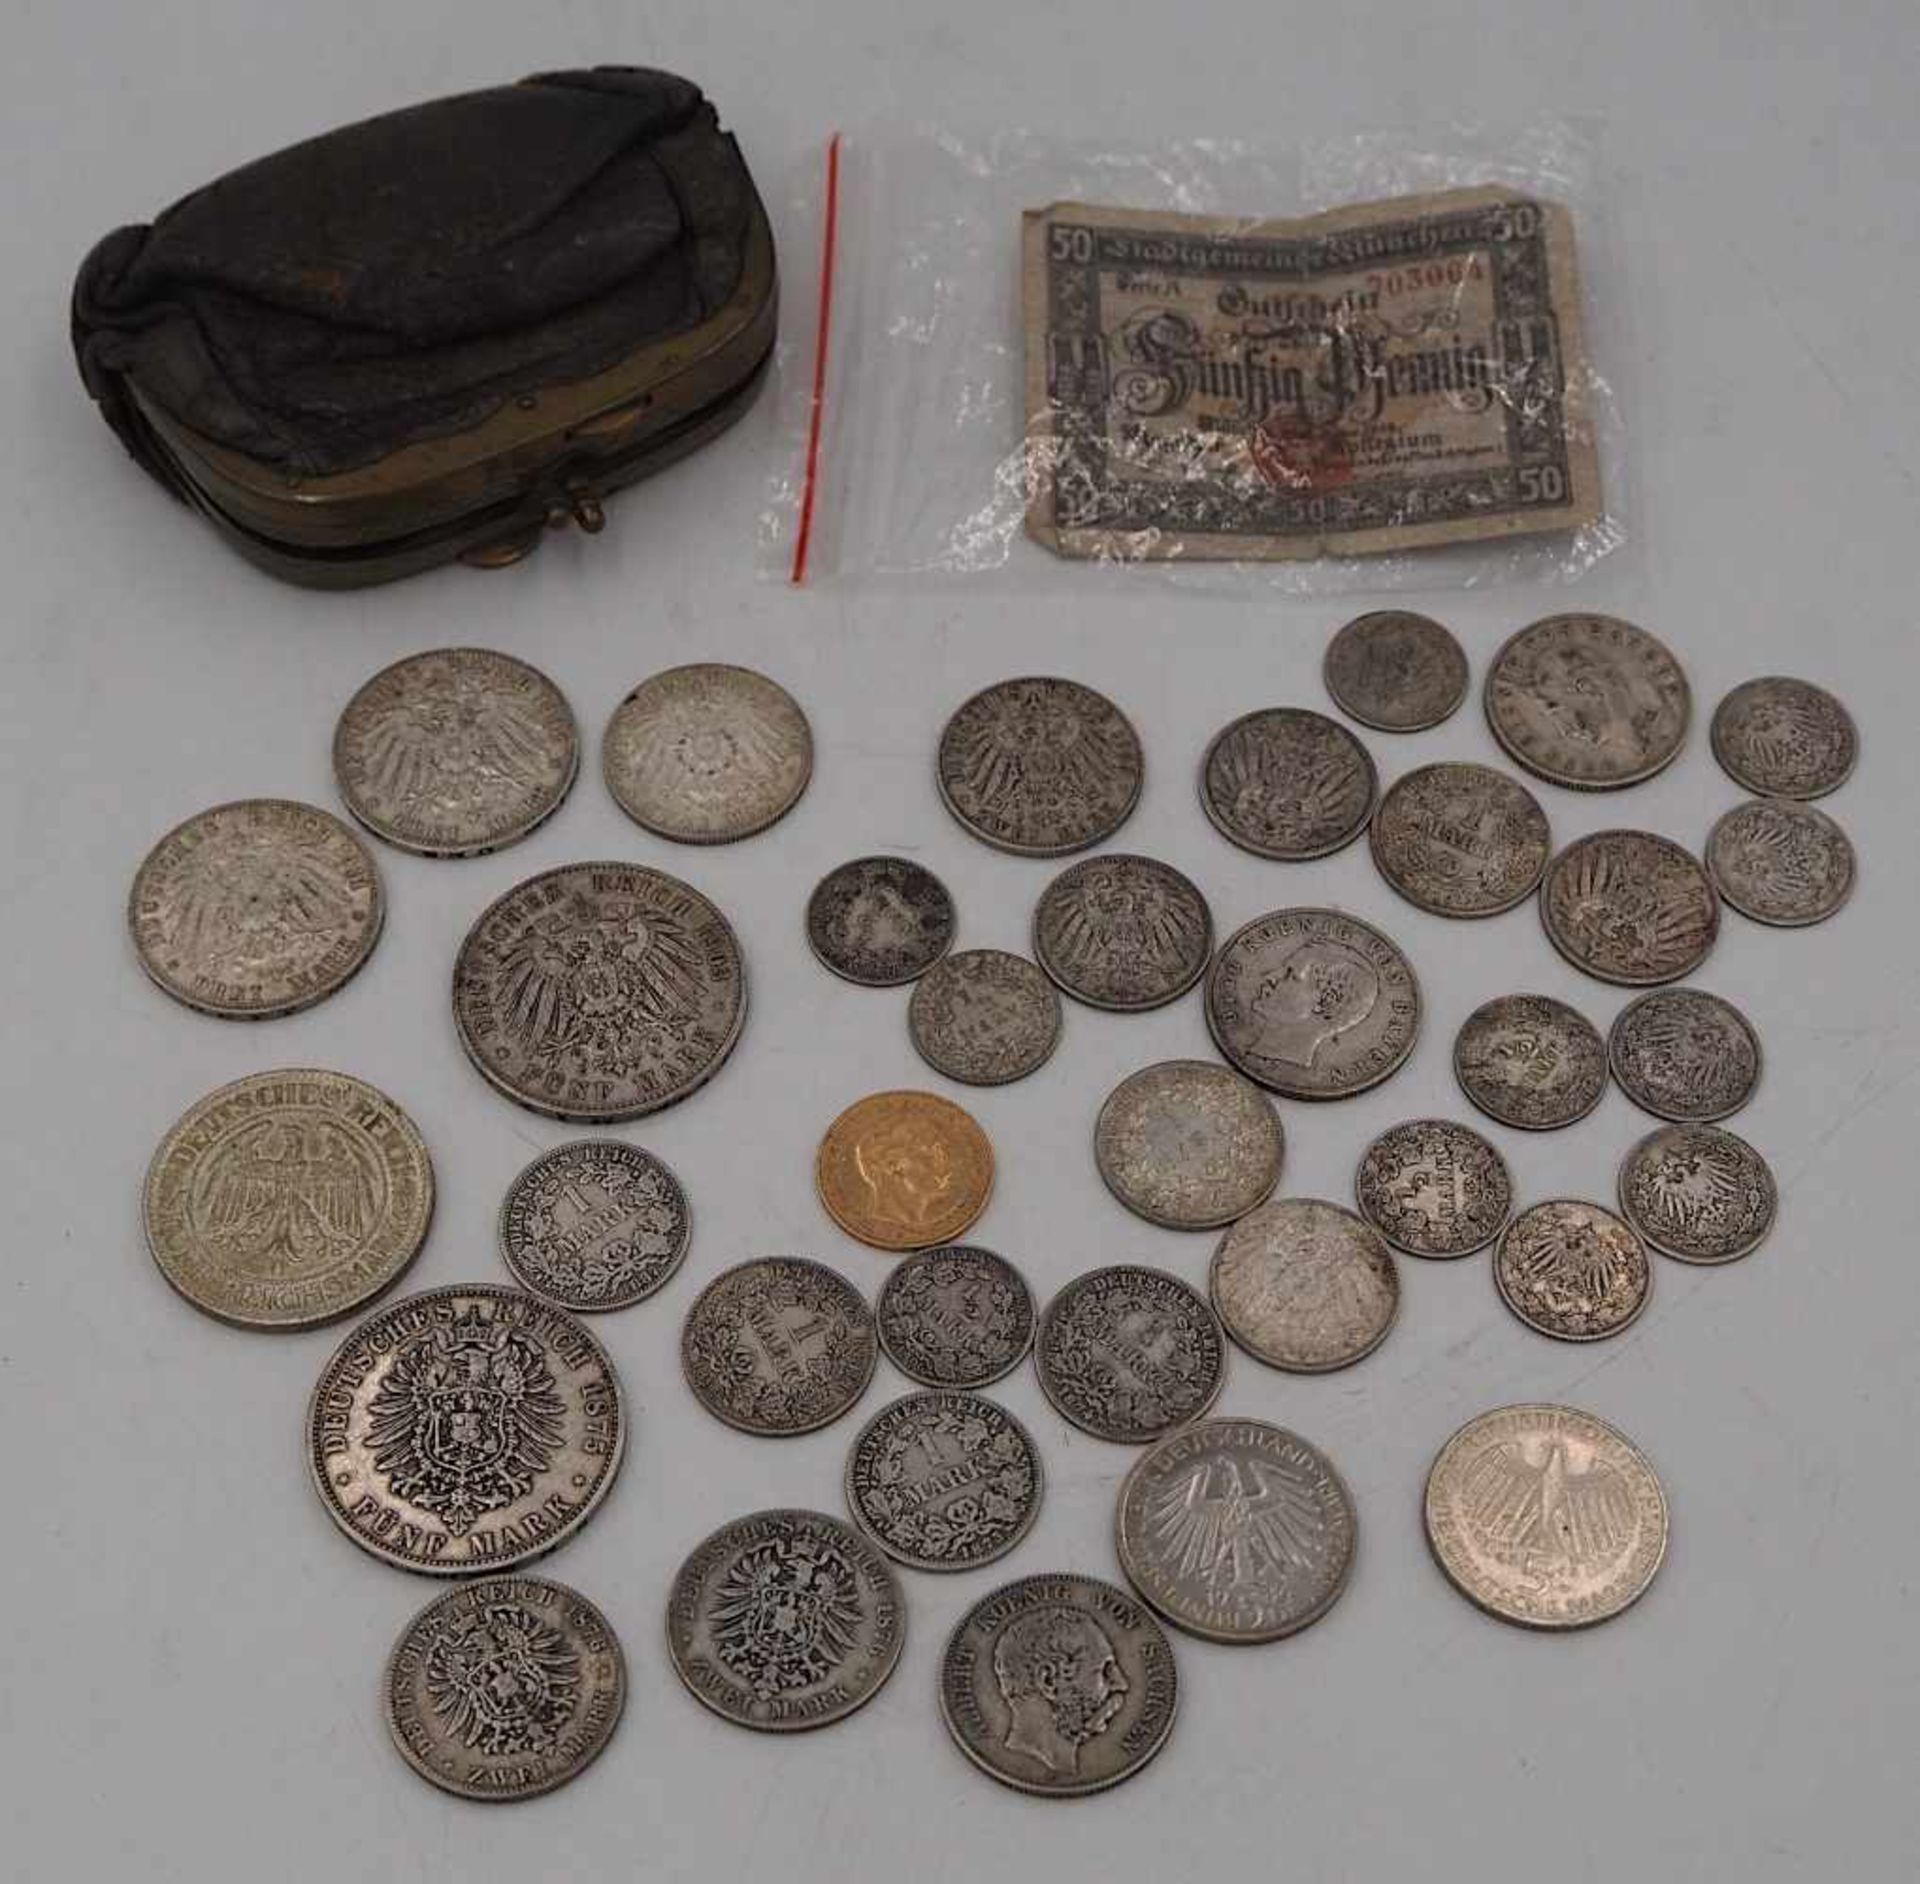 1 Konvolut Münzen/Medaillen, GG, Silber u.a. Dt. Reich, BRD, 5 DM u.a.